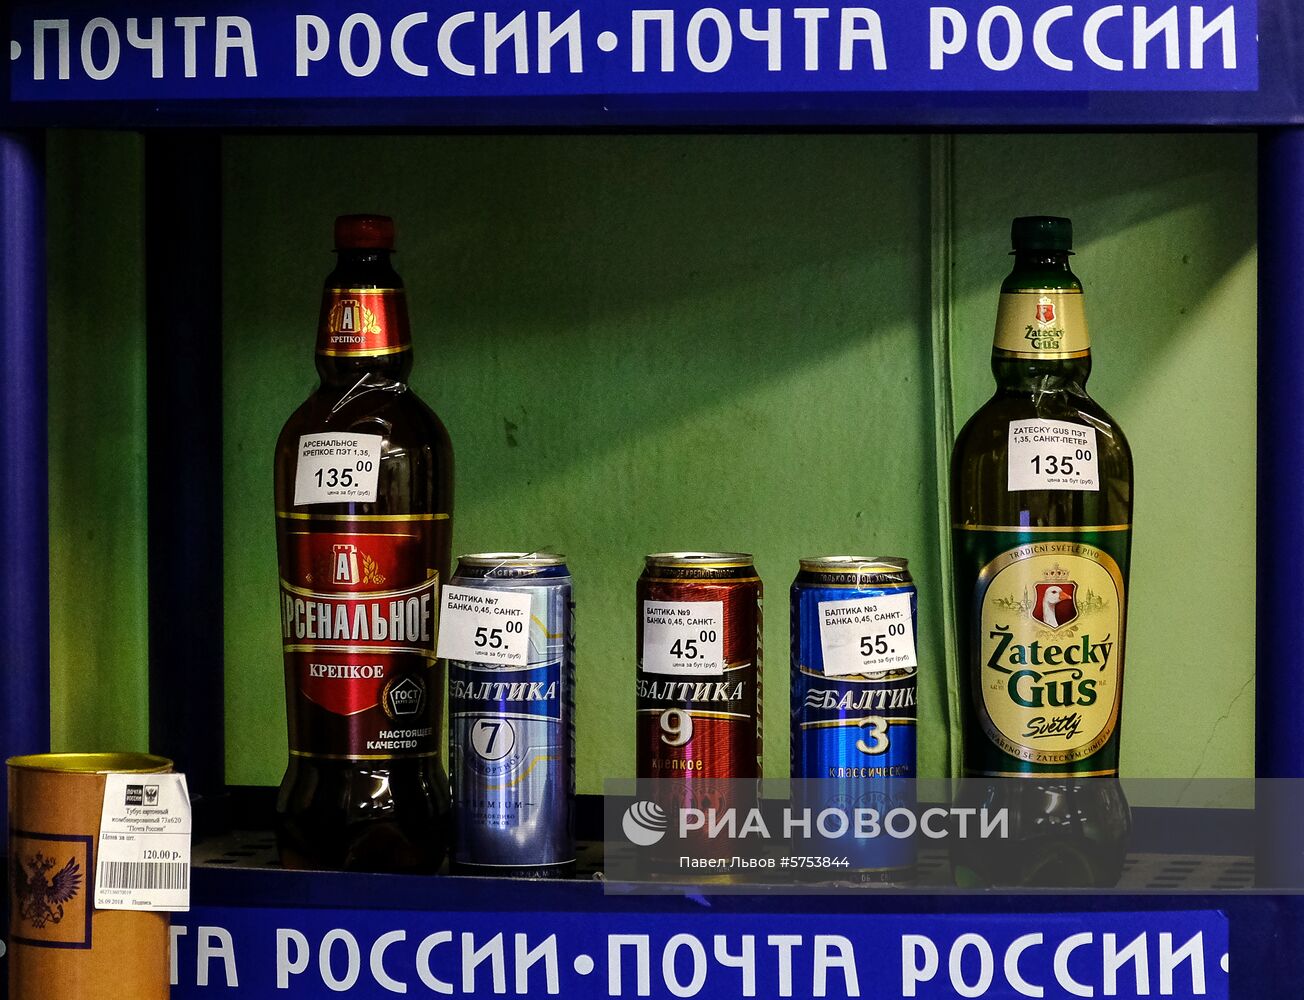 Продажа пива в отделениях "Почты России"